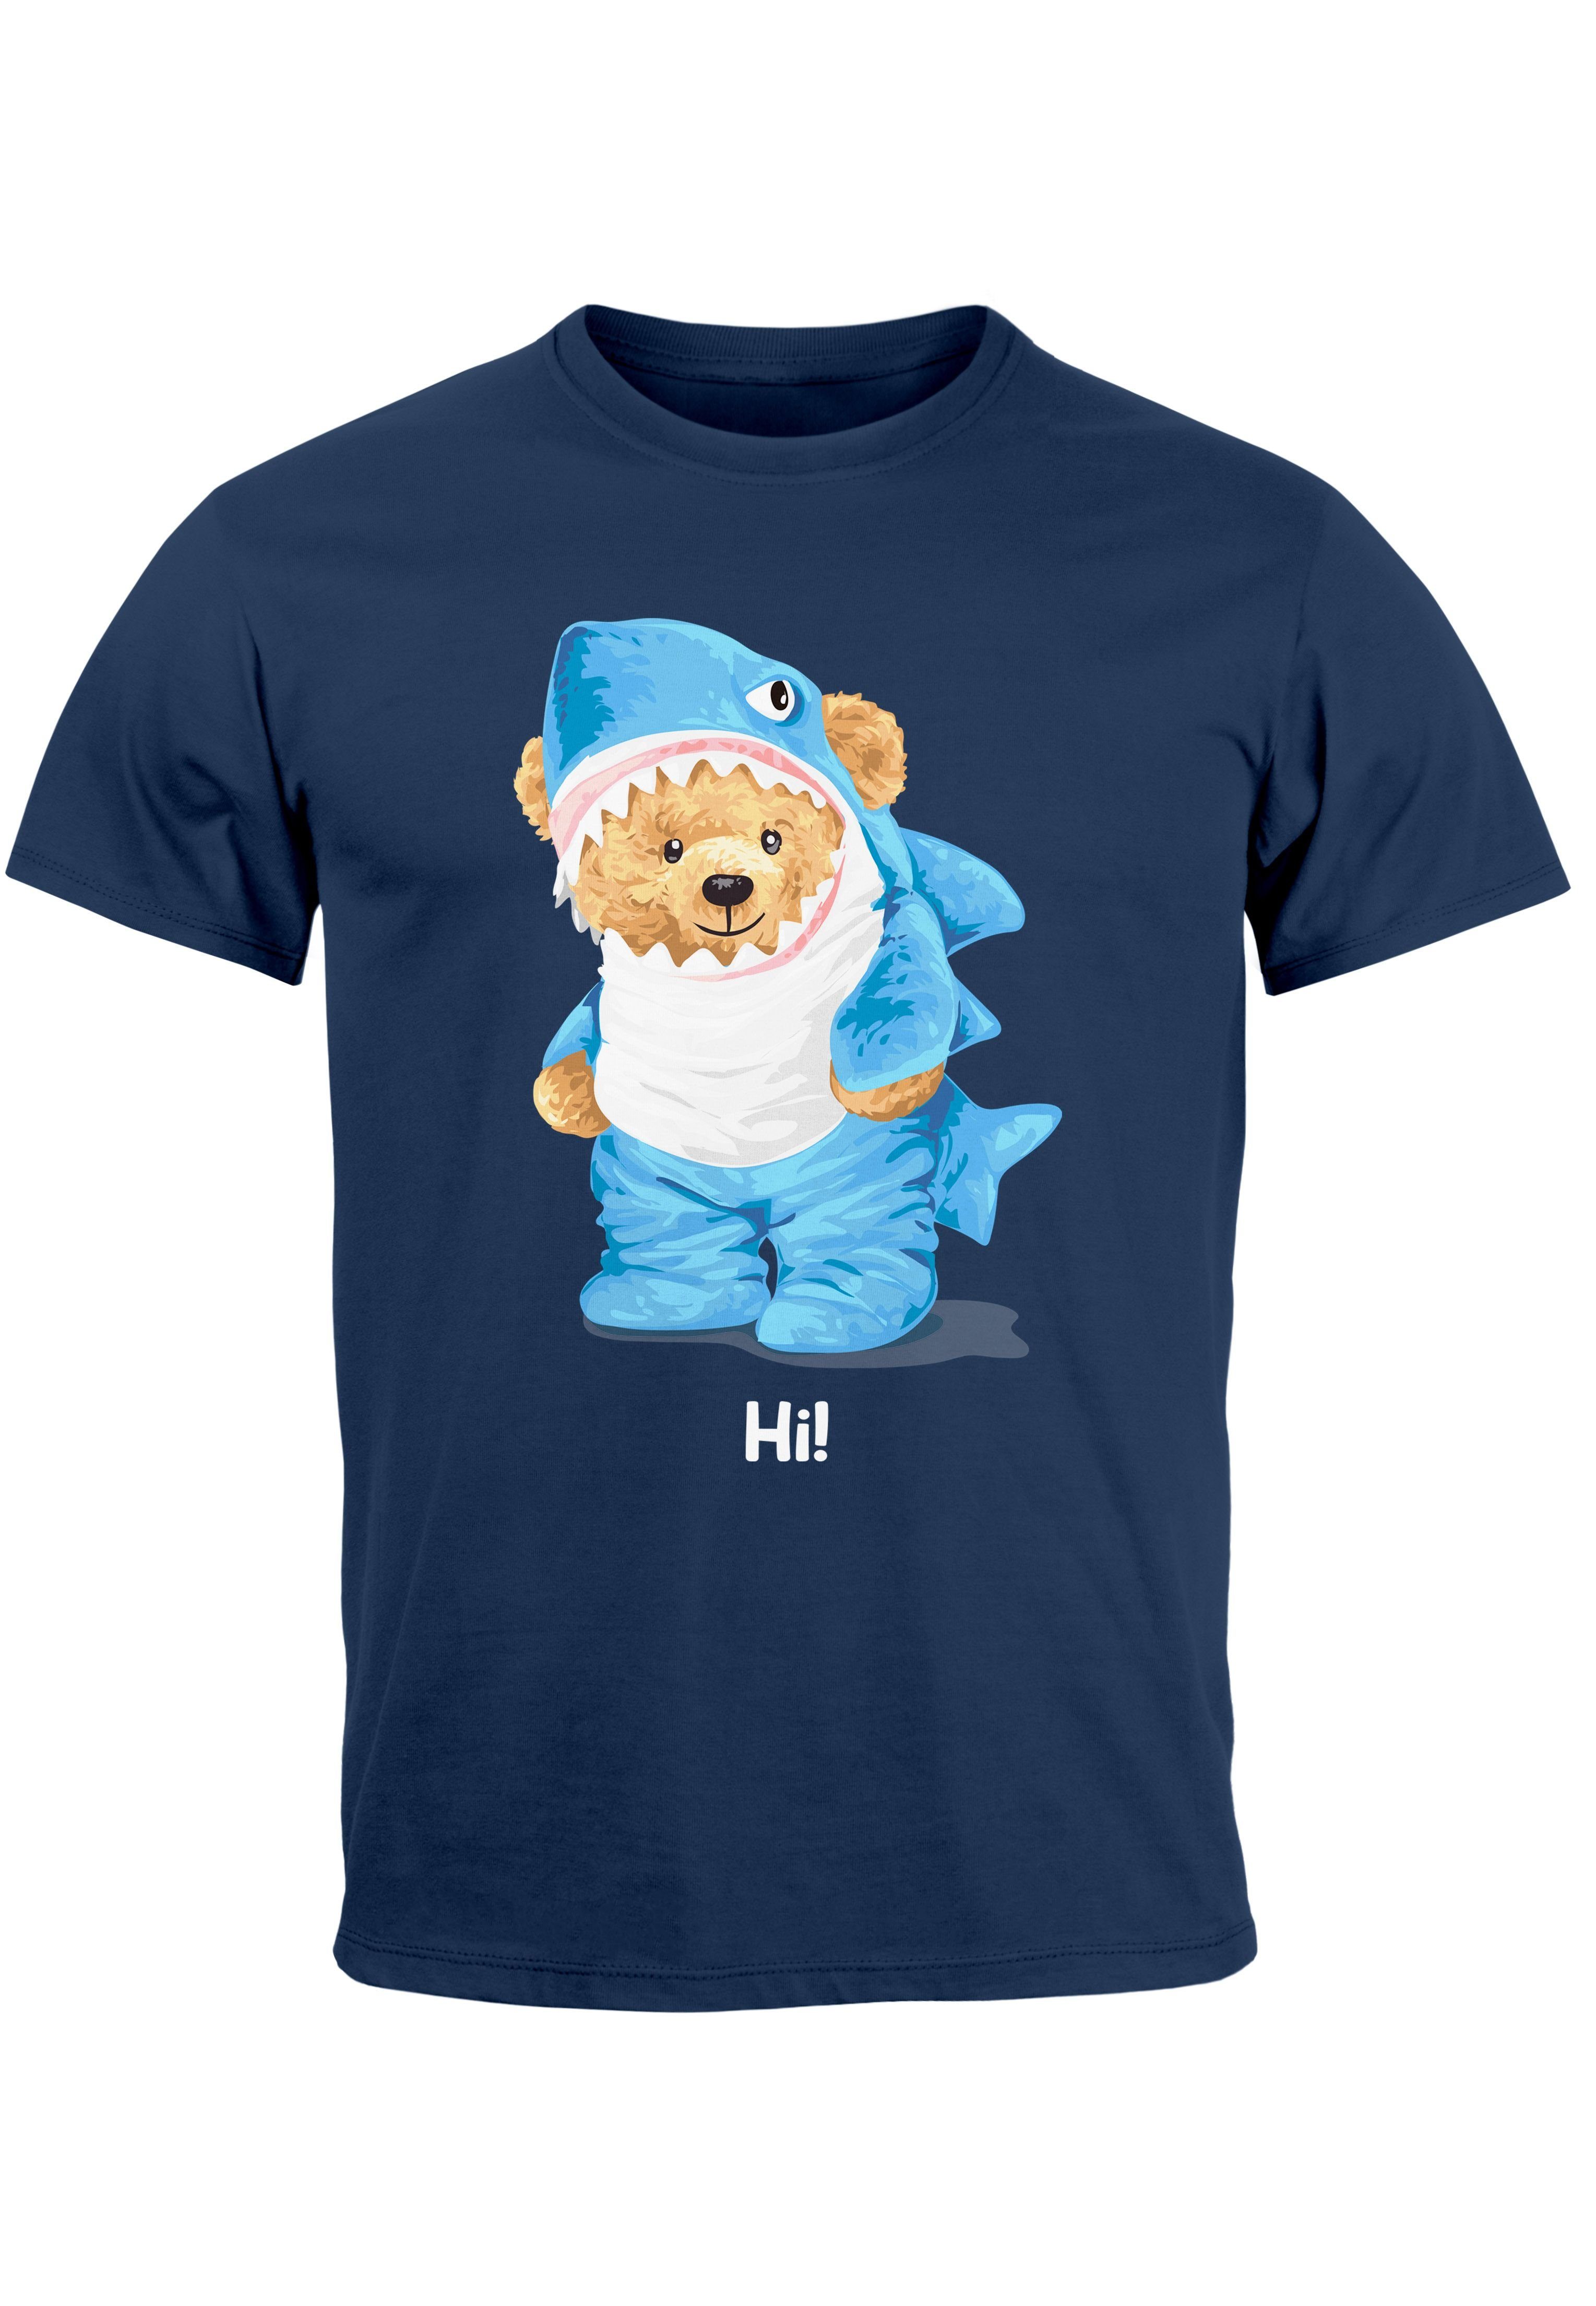 Neverless Print-Shirt Herren T-Shirt Hai Hi Teddy Bär Witz Parodie Printshirt Aufdruck Fashi mit Print navy | T-Shirts